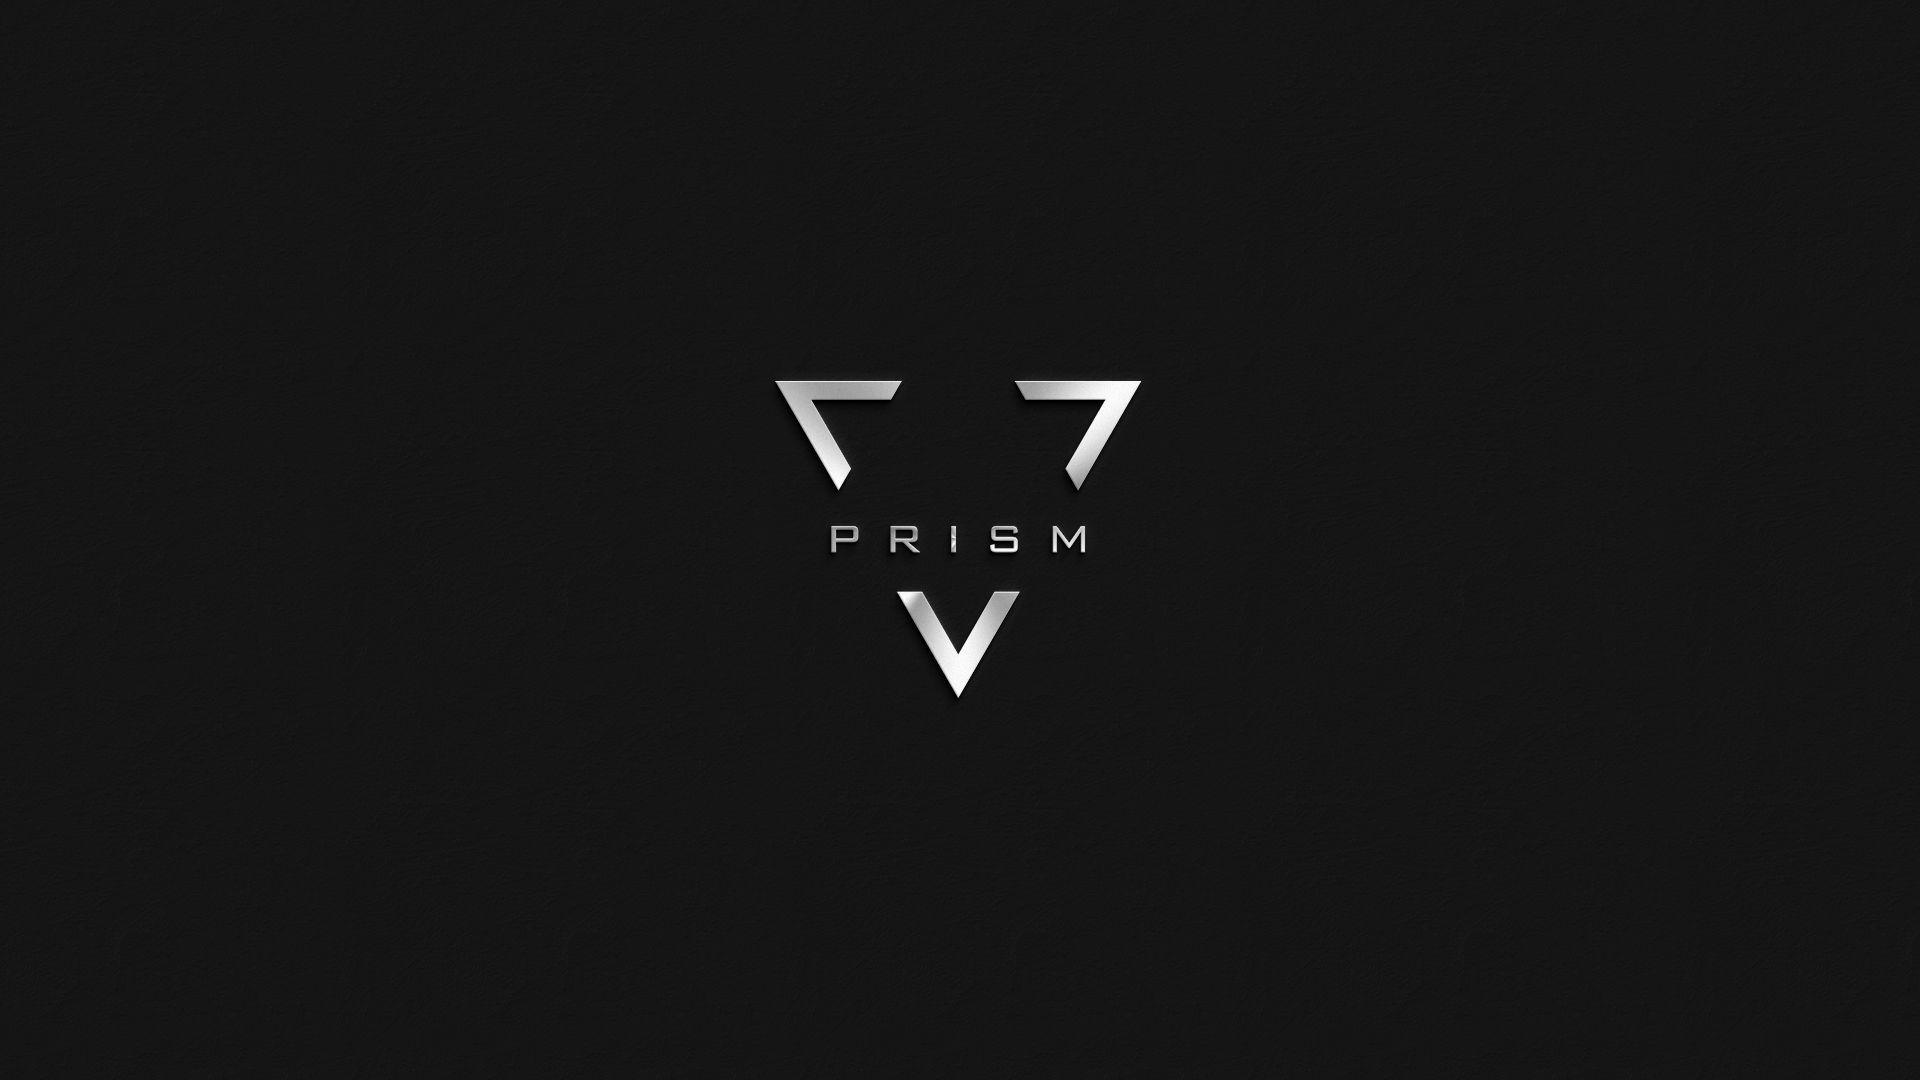 Prism Logo - prism logo made by me.. | just for fun | Logos, Logo design, Logo ...